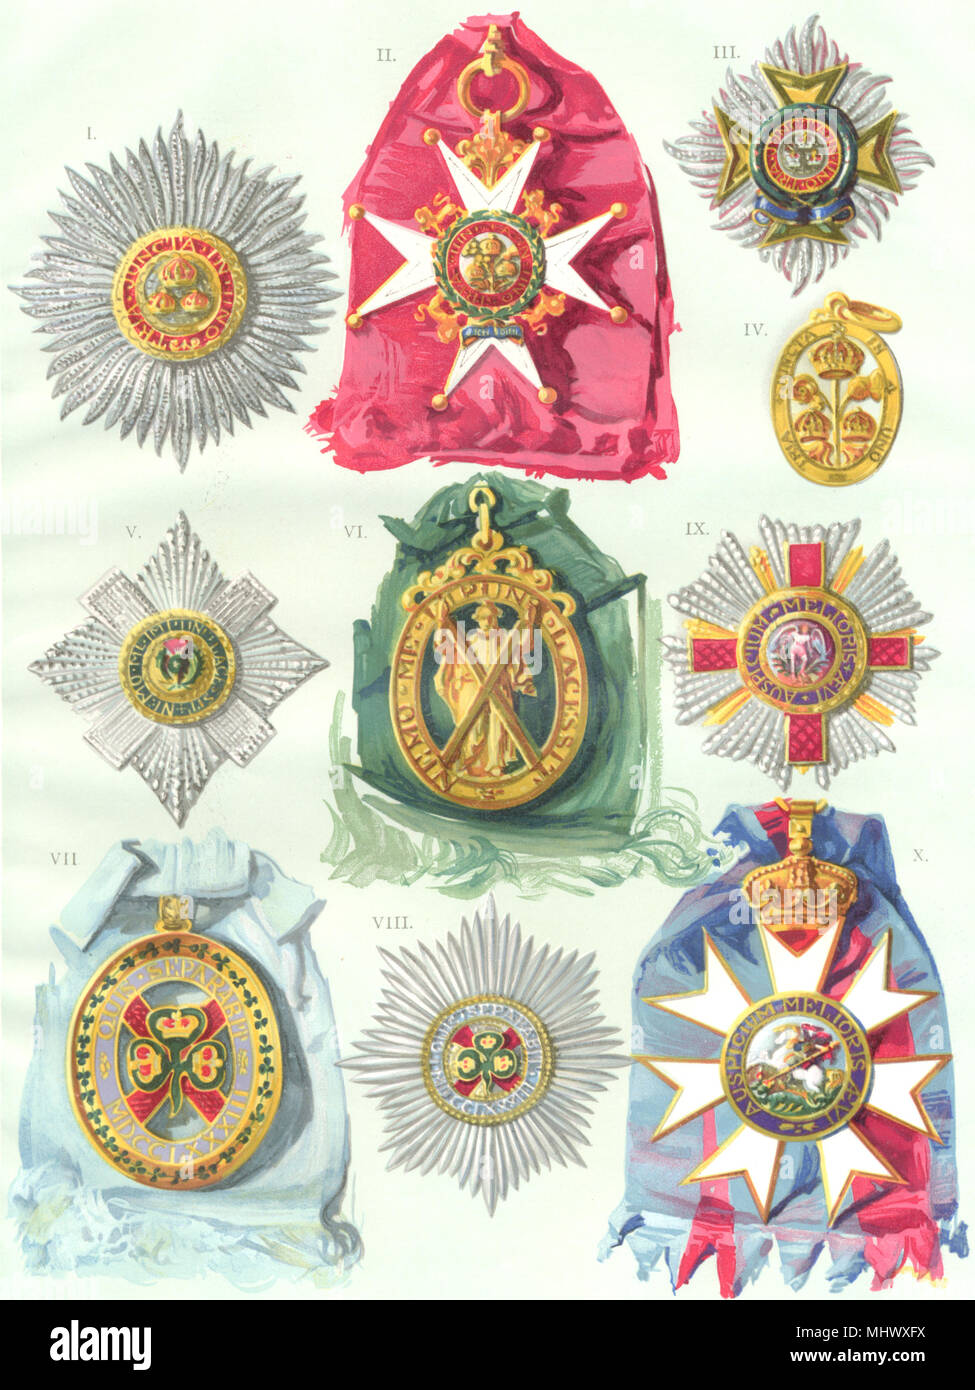 Des médailles. Baignoire Star;Grand Croix;Pitcher;;Badge St Patrick;Michael;St George 1910 Banque D'Images